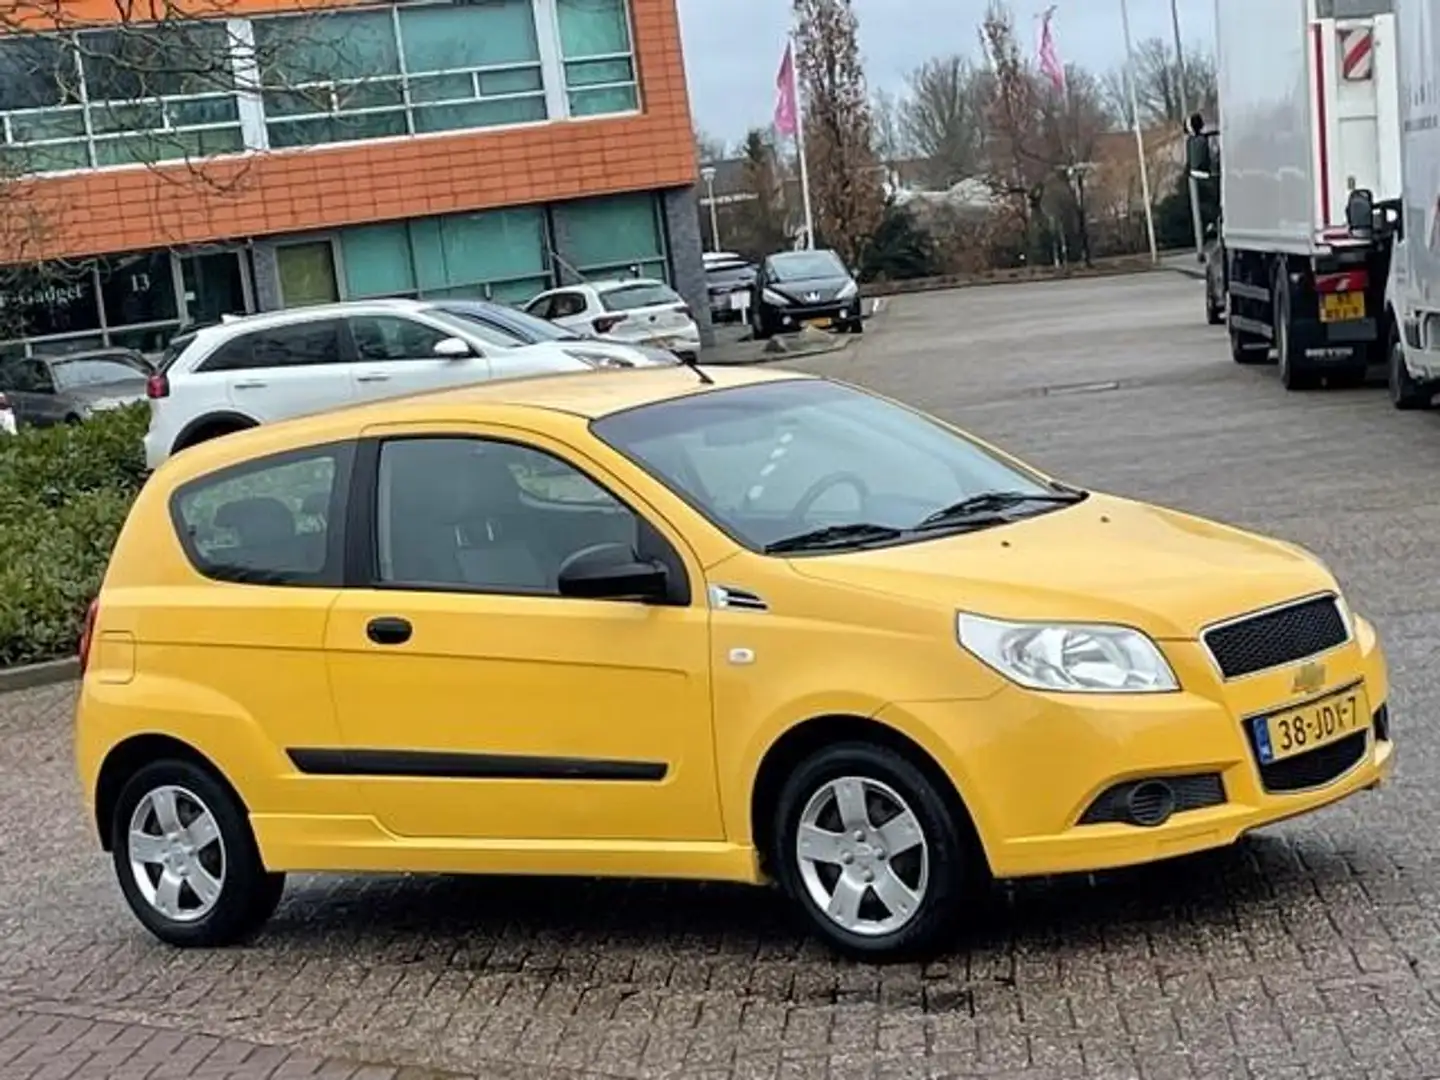 Chevrolet Aveo 1.2 16V L,bj.2009, kleur:geel,APK tot 02/2025 en N Sárga - 2